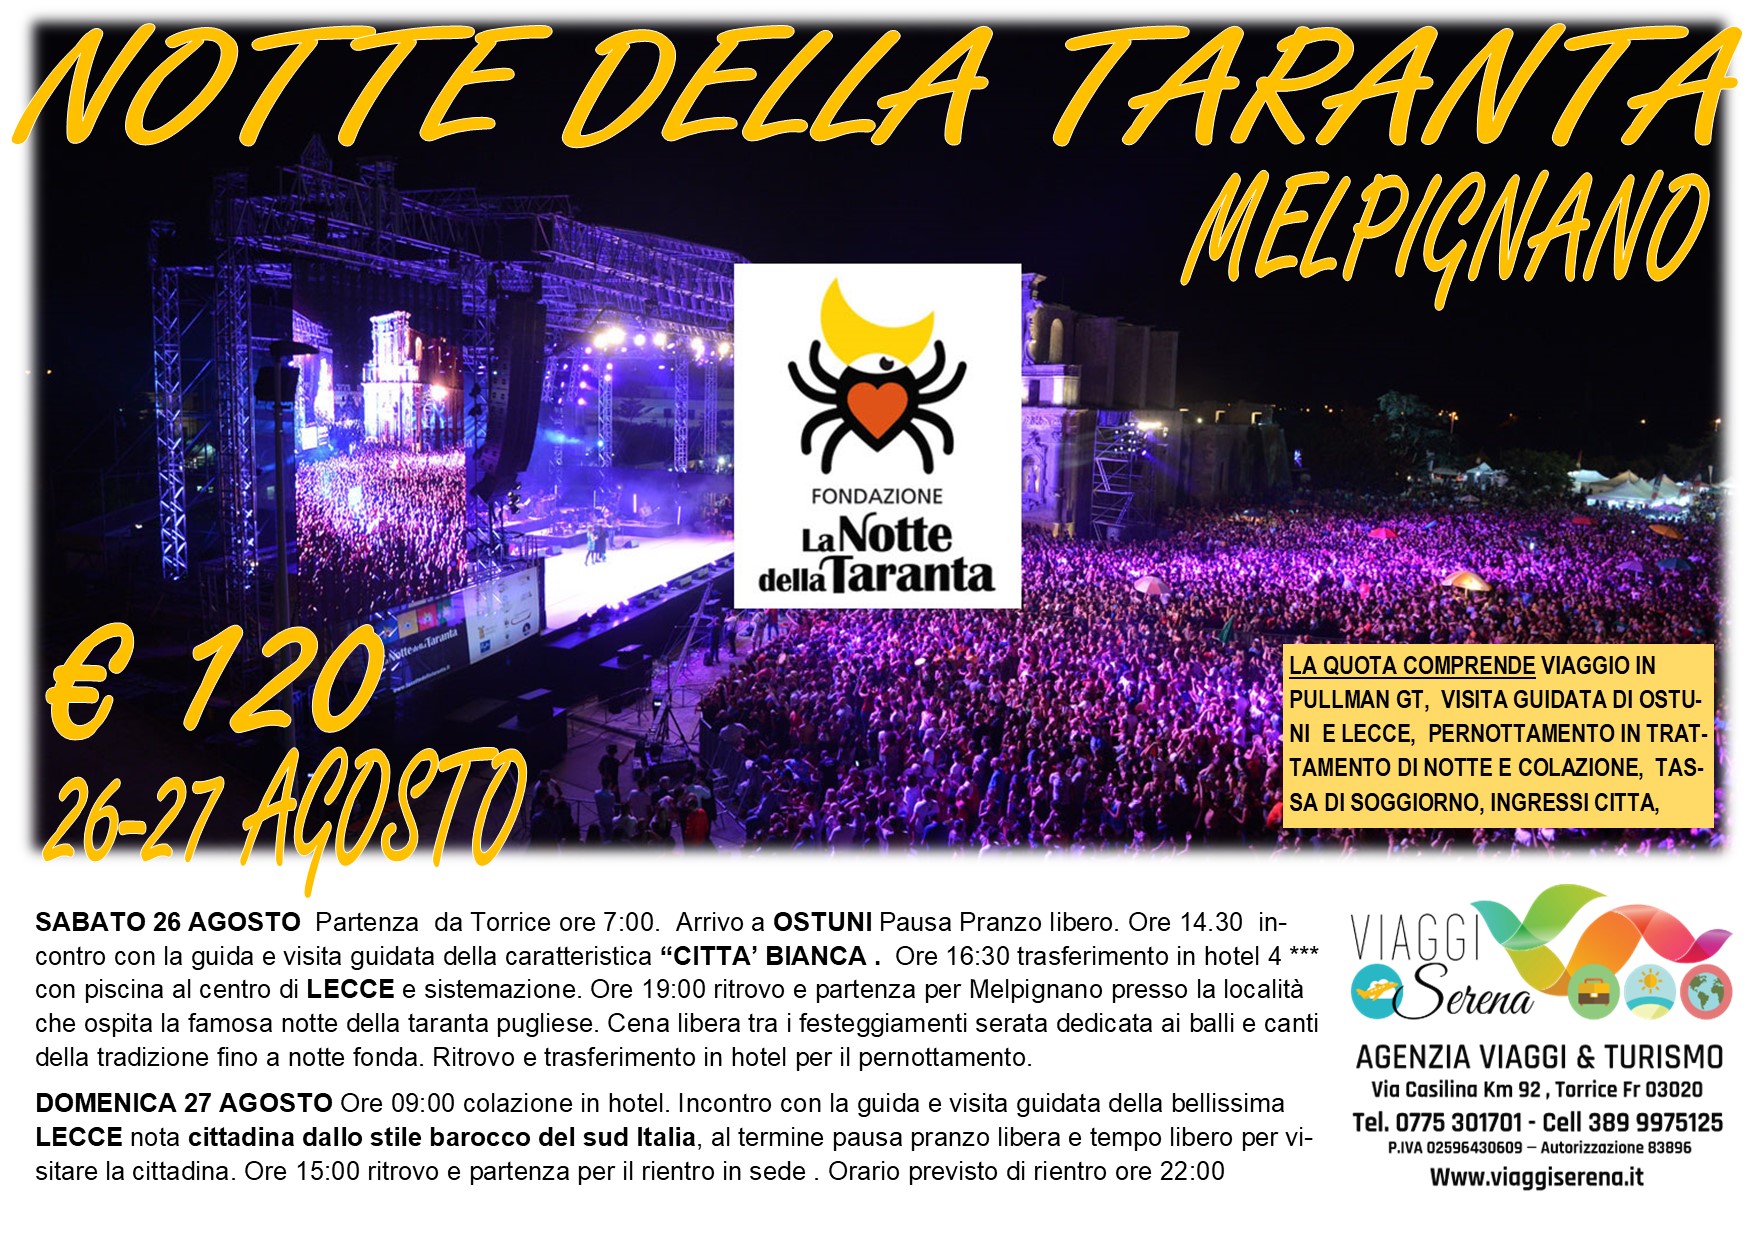 Viaggi di Gruppo: Notte della TARANTA , Lecce & Ostuni  26-27 Agosto € 120,00